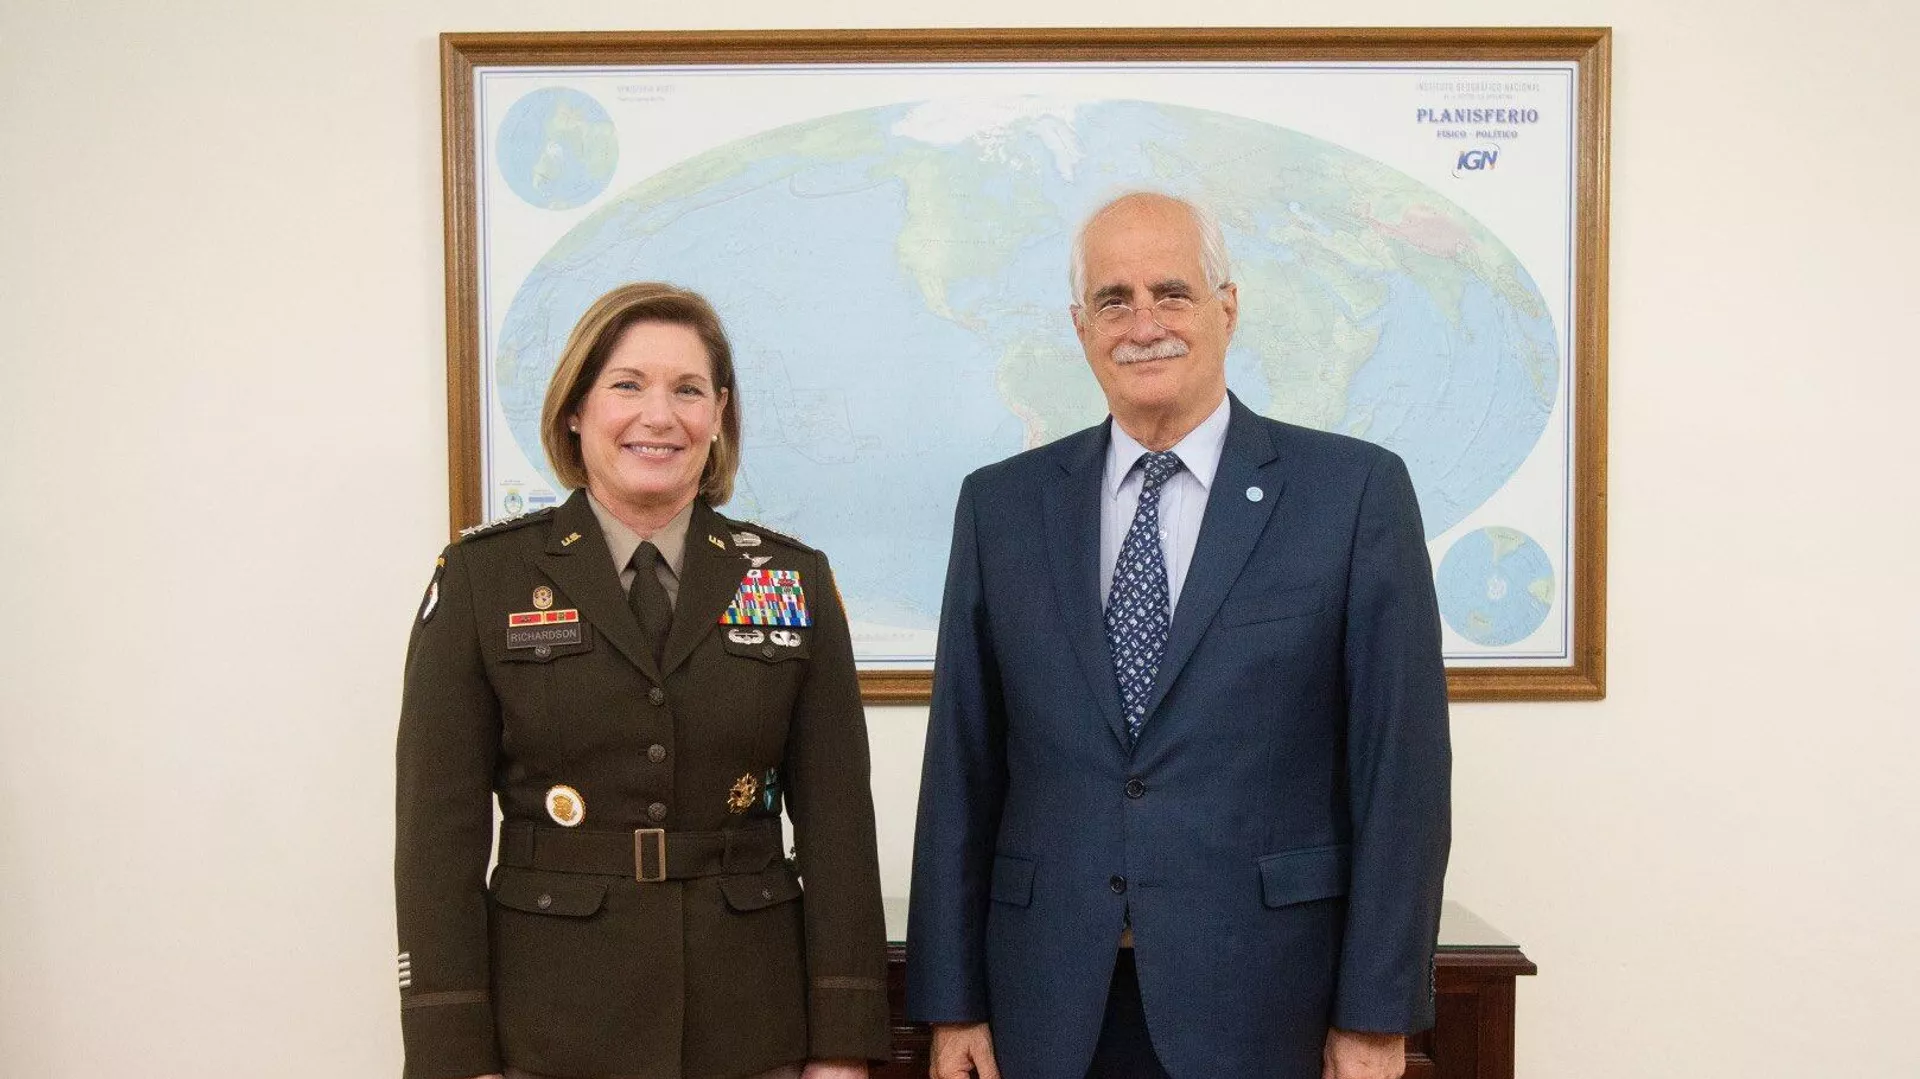  El ministro de Defensa argentino habla de cooperación militar con la jefa de Comando Sur de EEUU